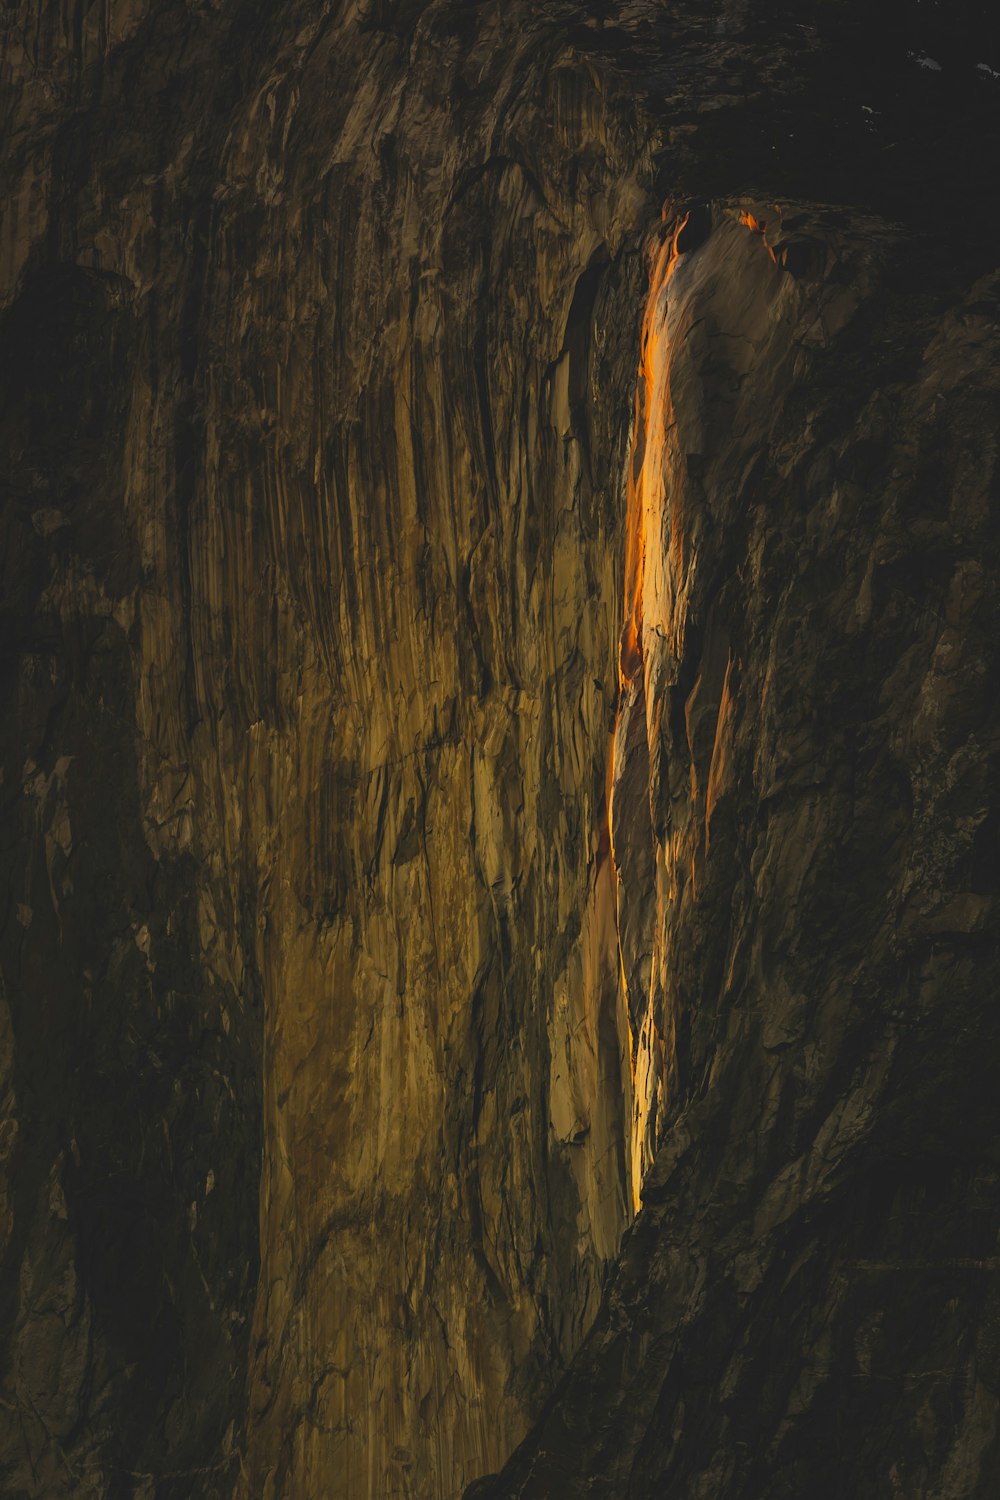 a close-up of a cave